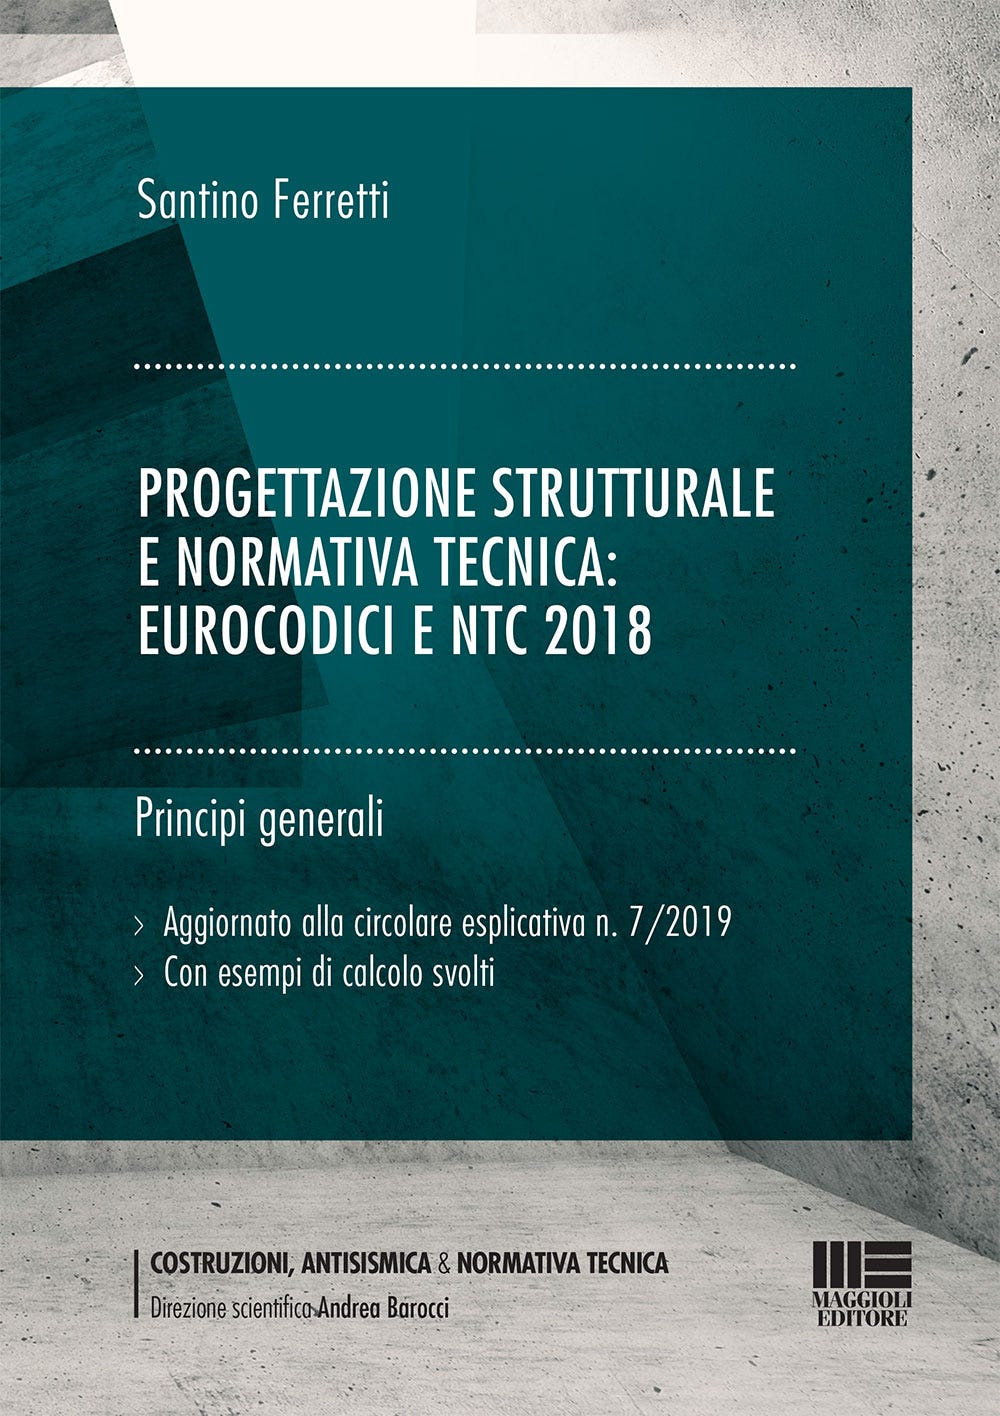 Progettazione strutturale e normativa tecnica: Eurocodici e NTC 2018